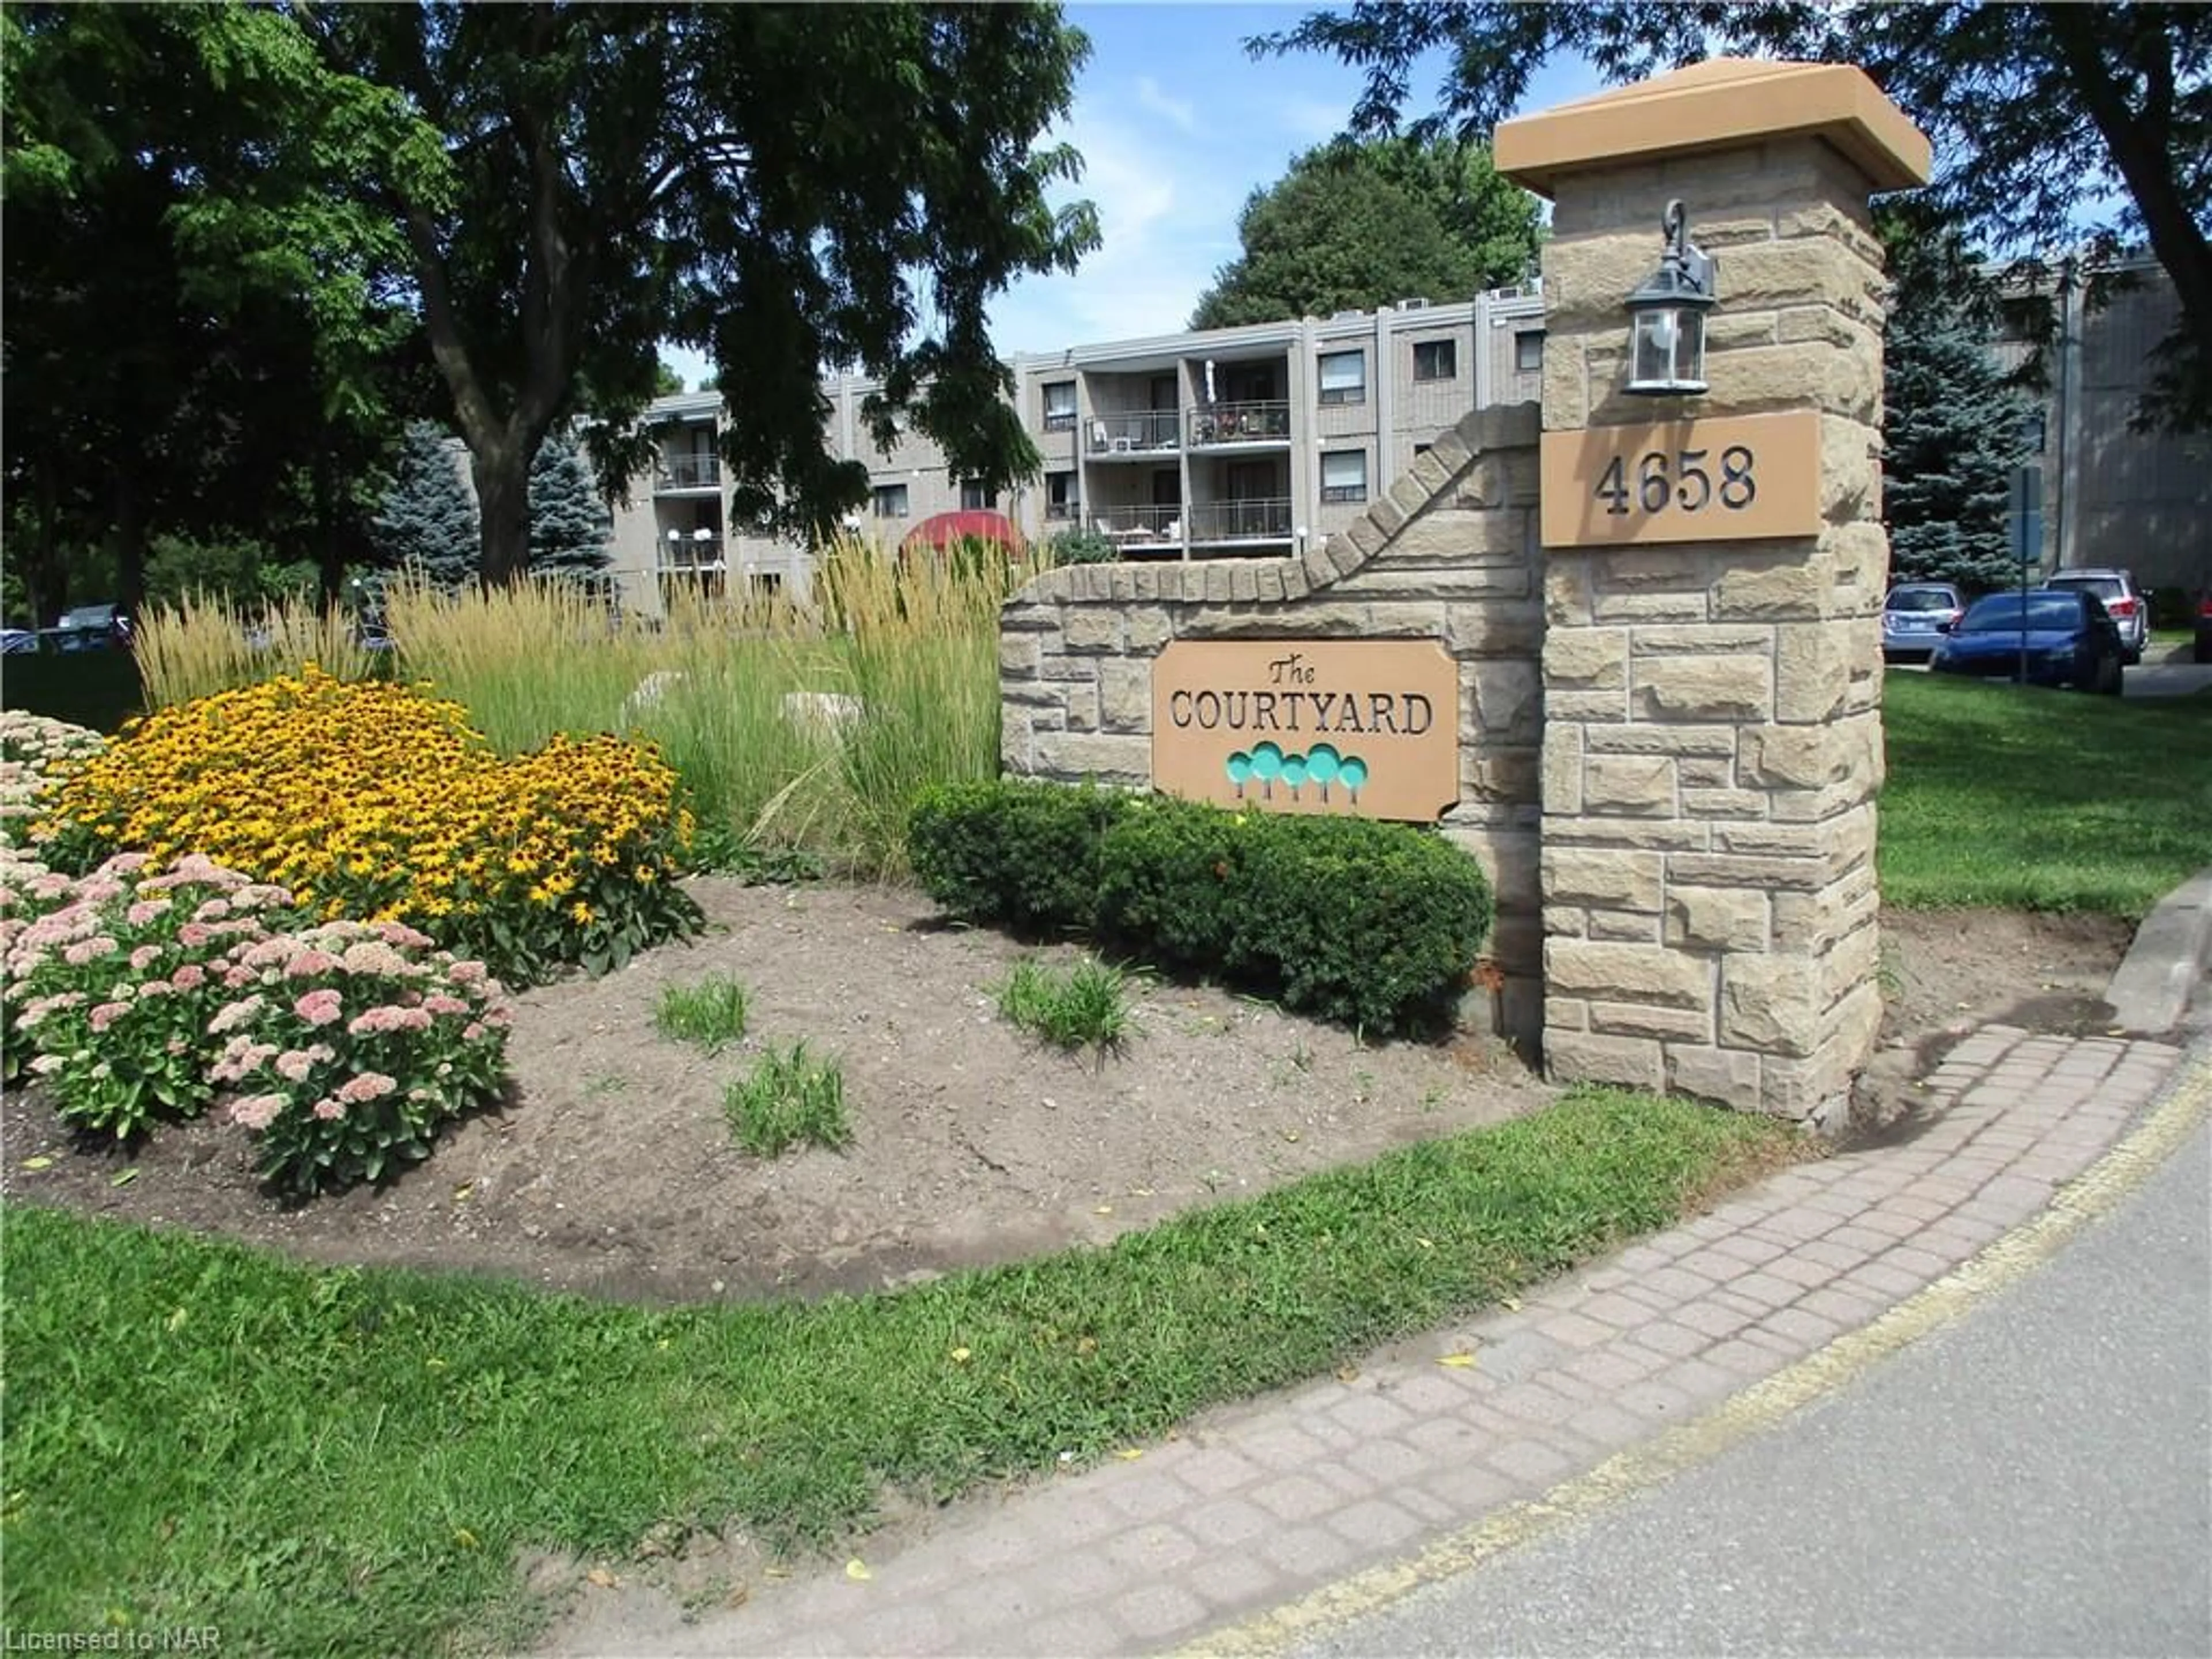 A pic from exterior of the house or condo for 4658 Drummond Rd #314, Niagara Falls Ontario L2E 7E1